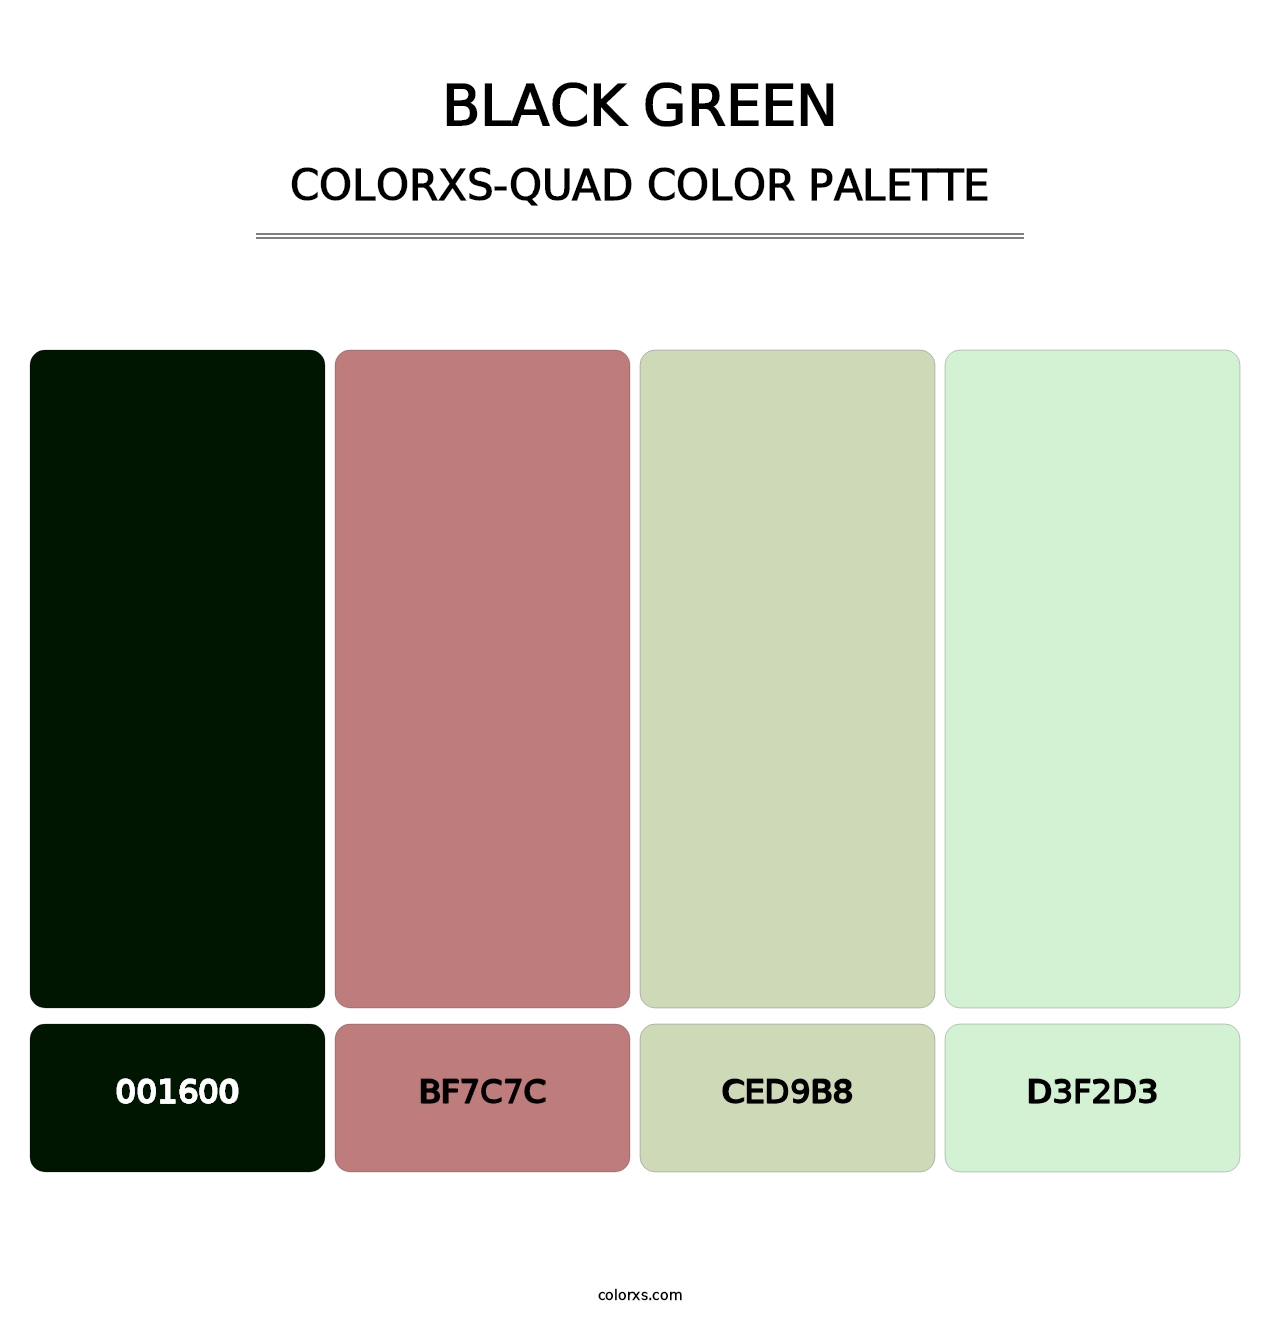 Black Green - Colorxs Quad Palette